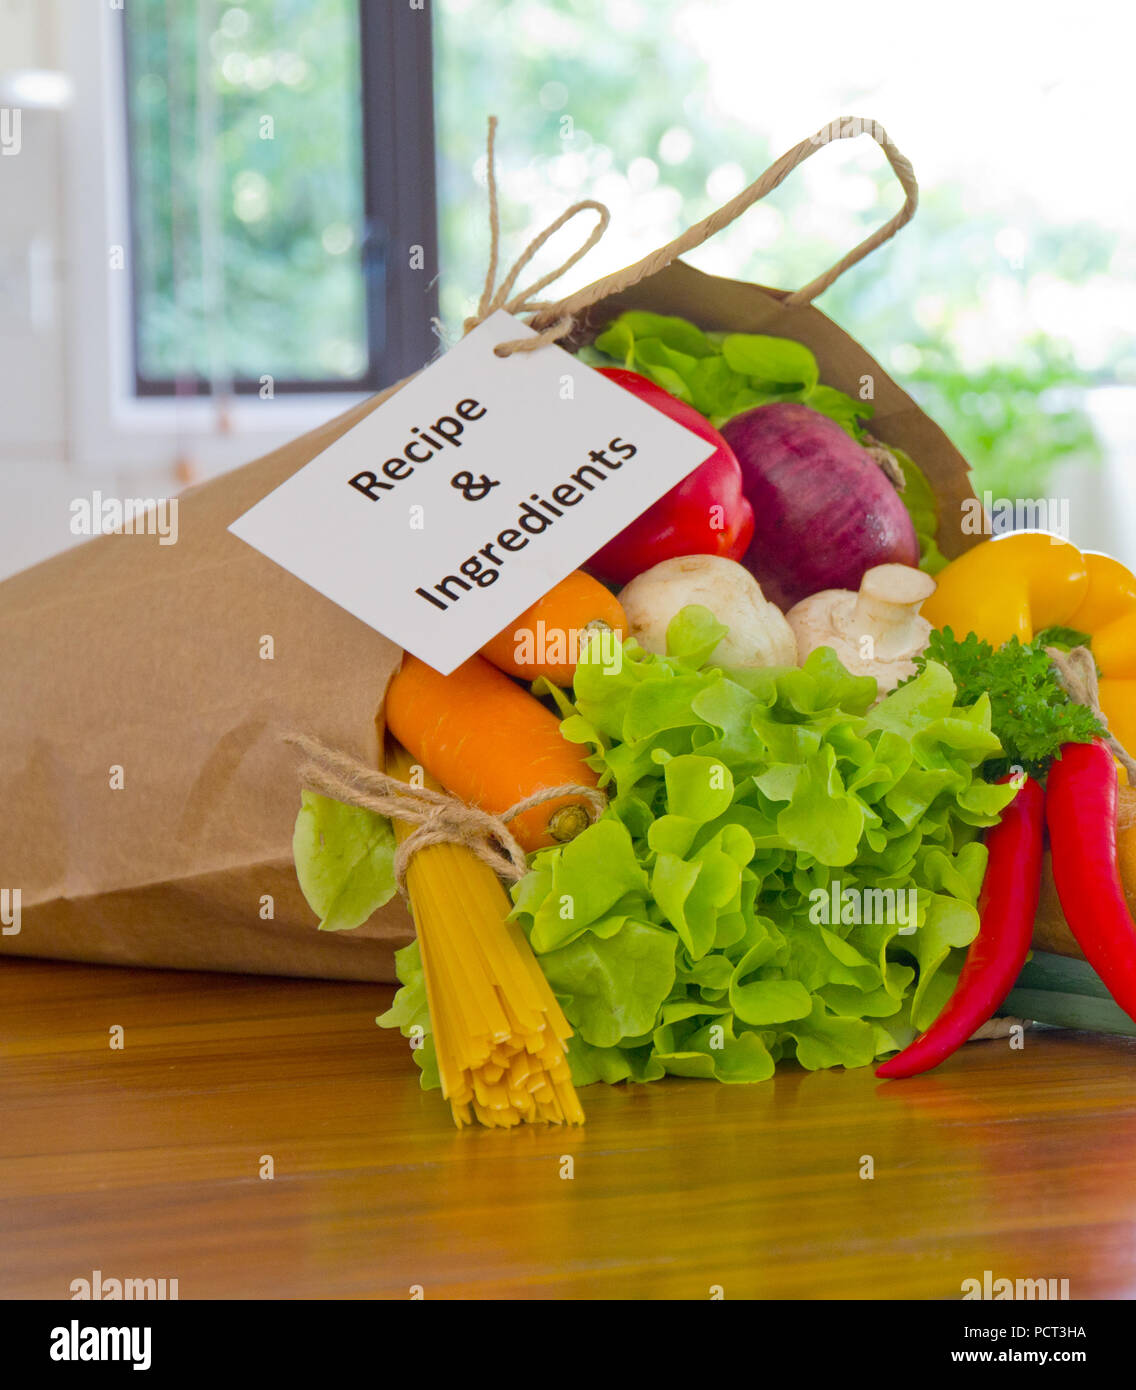 Les légumes biologiques frais de livraison des aliments en sac de papier sur banc en bois dans la cuisine Banque D'Images